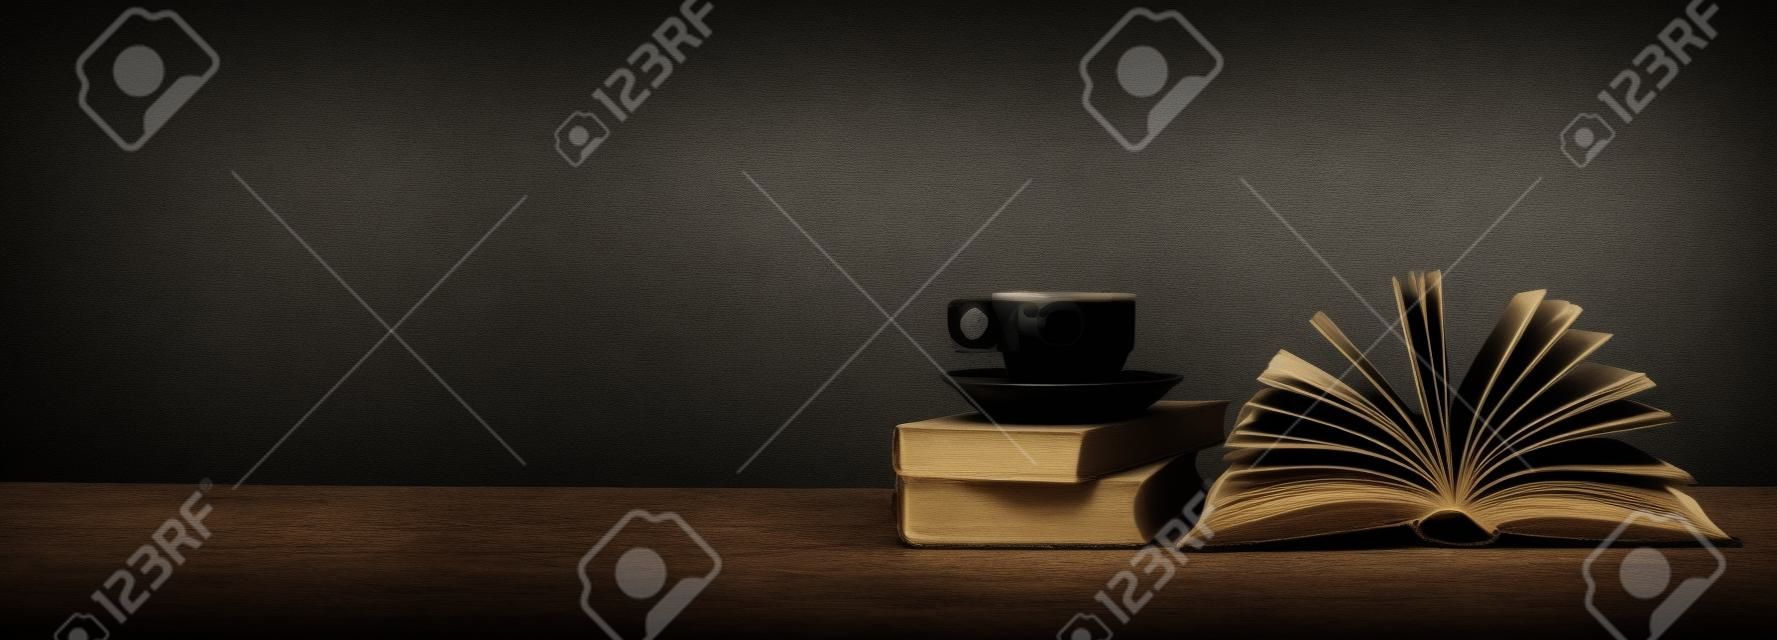 geöffnetes Buch, Tasse Kaffee auf dem grungy Hintergrund, panoramisch, Kopienraum